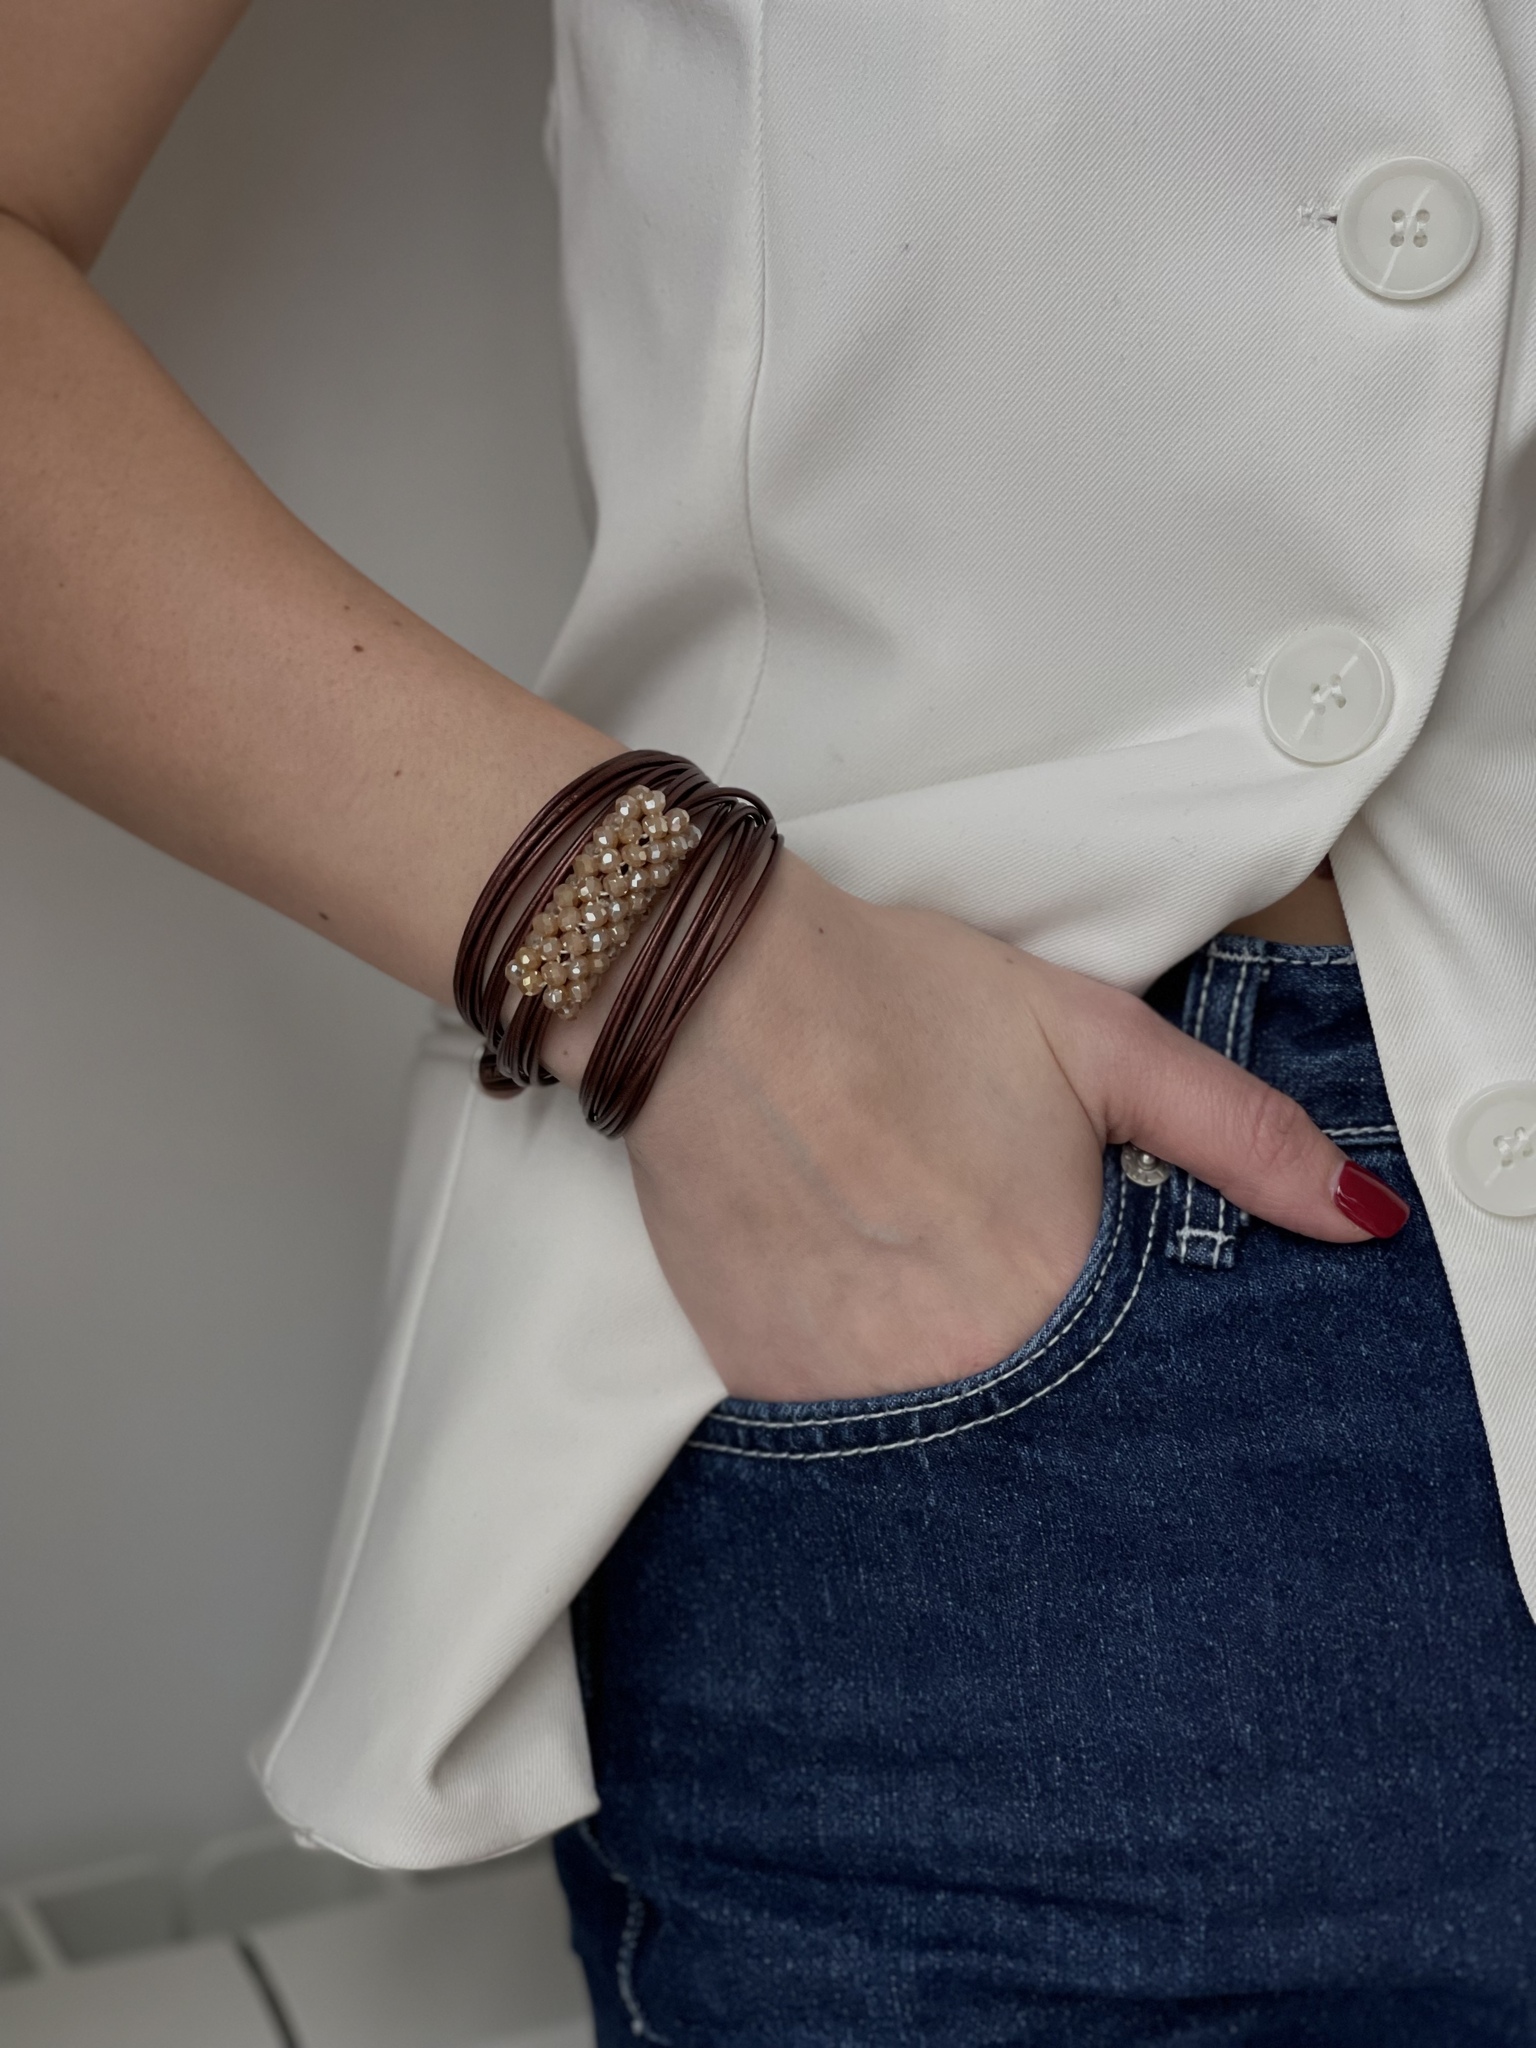 Кожаные браслеты - купить браслеты из кожи на руку в СПб | Интернет-магазин PARURE